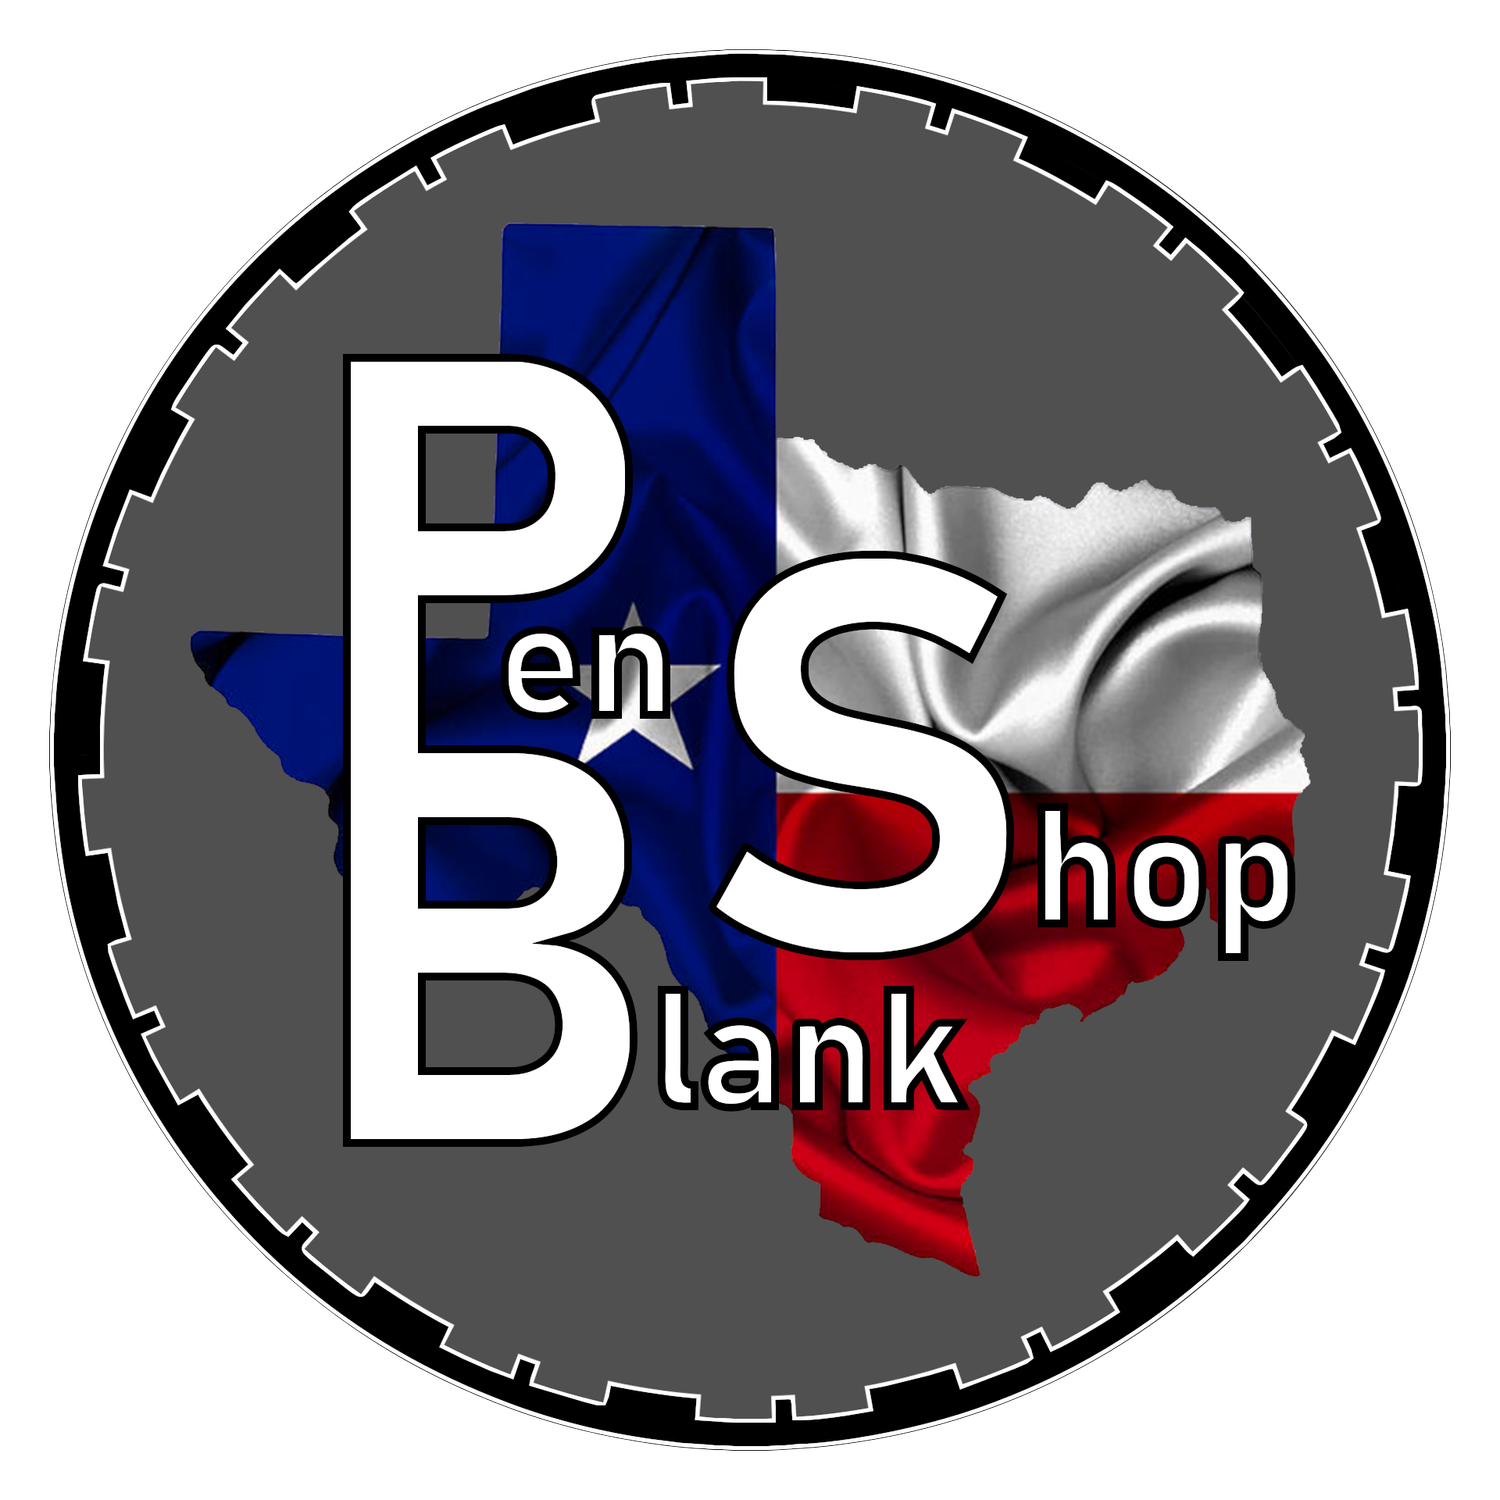 Pen Blank Shop